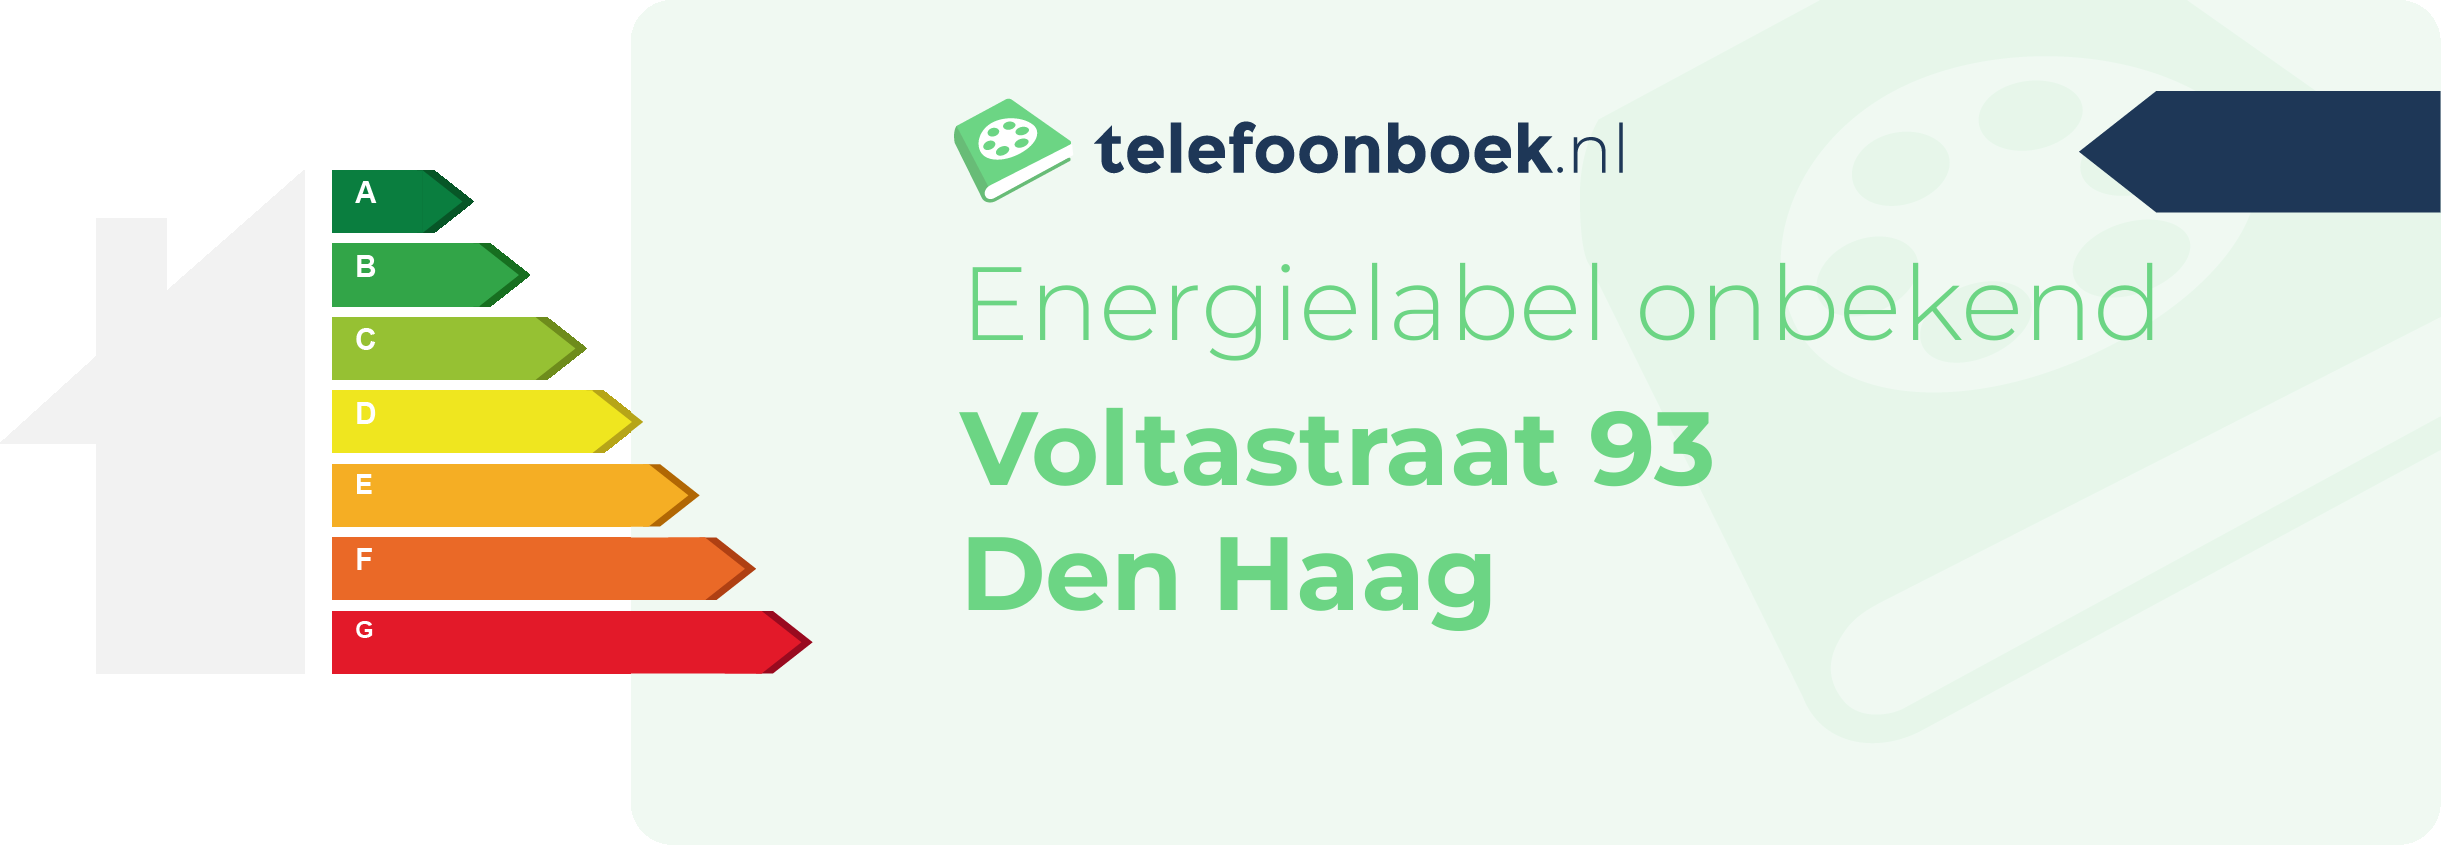 Energielabel Voltastraat 93 Den Haag